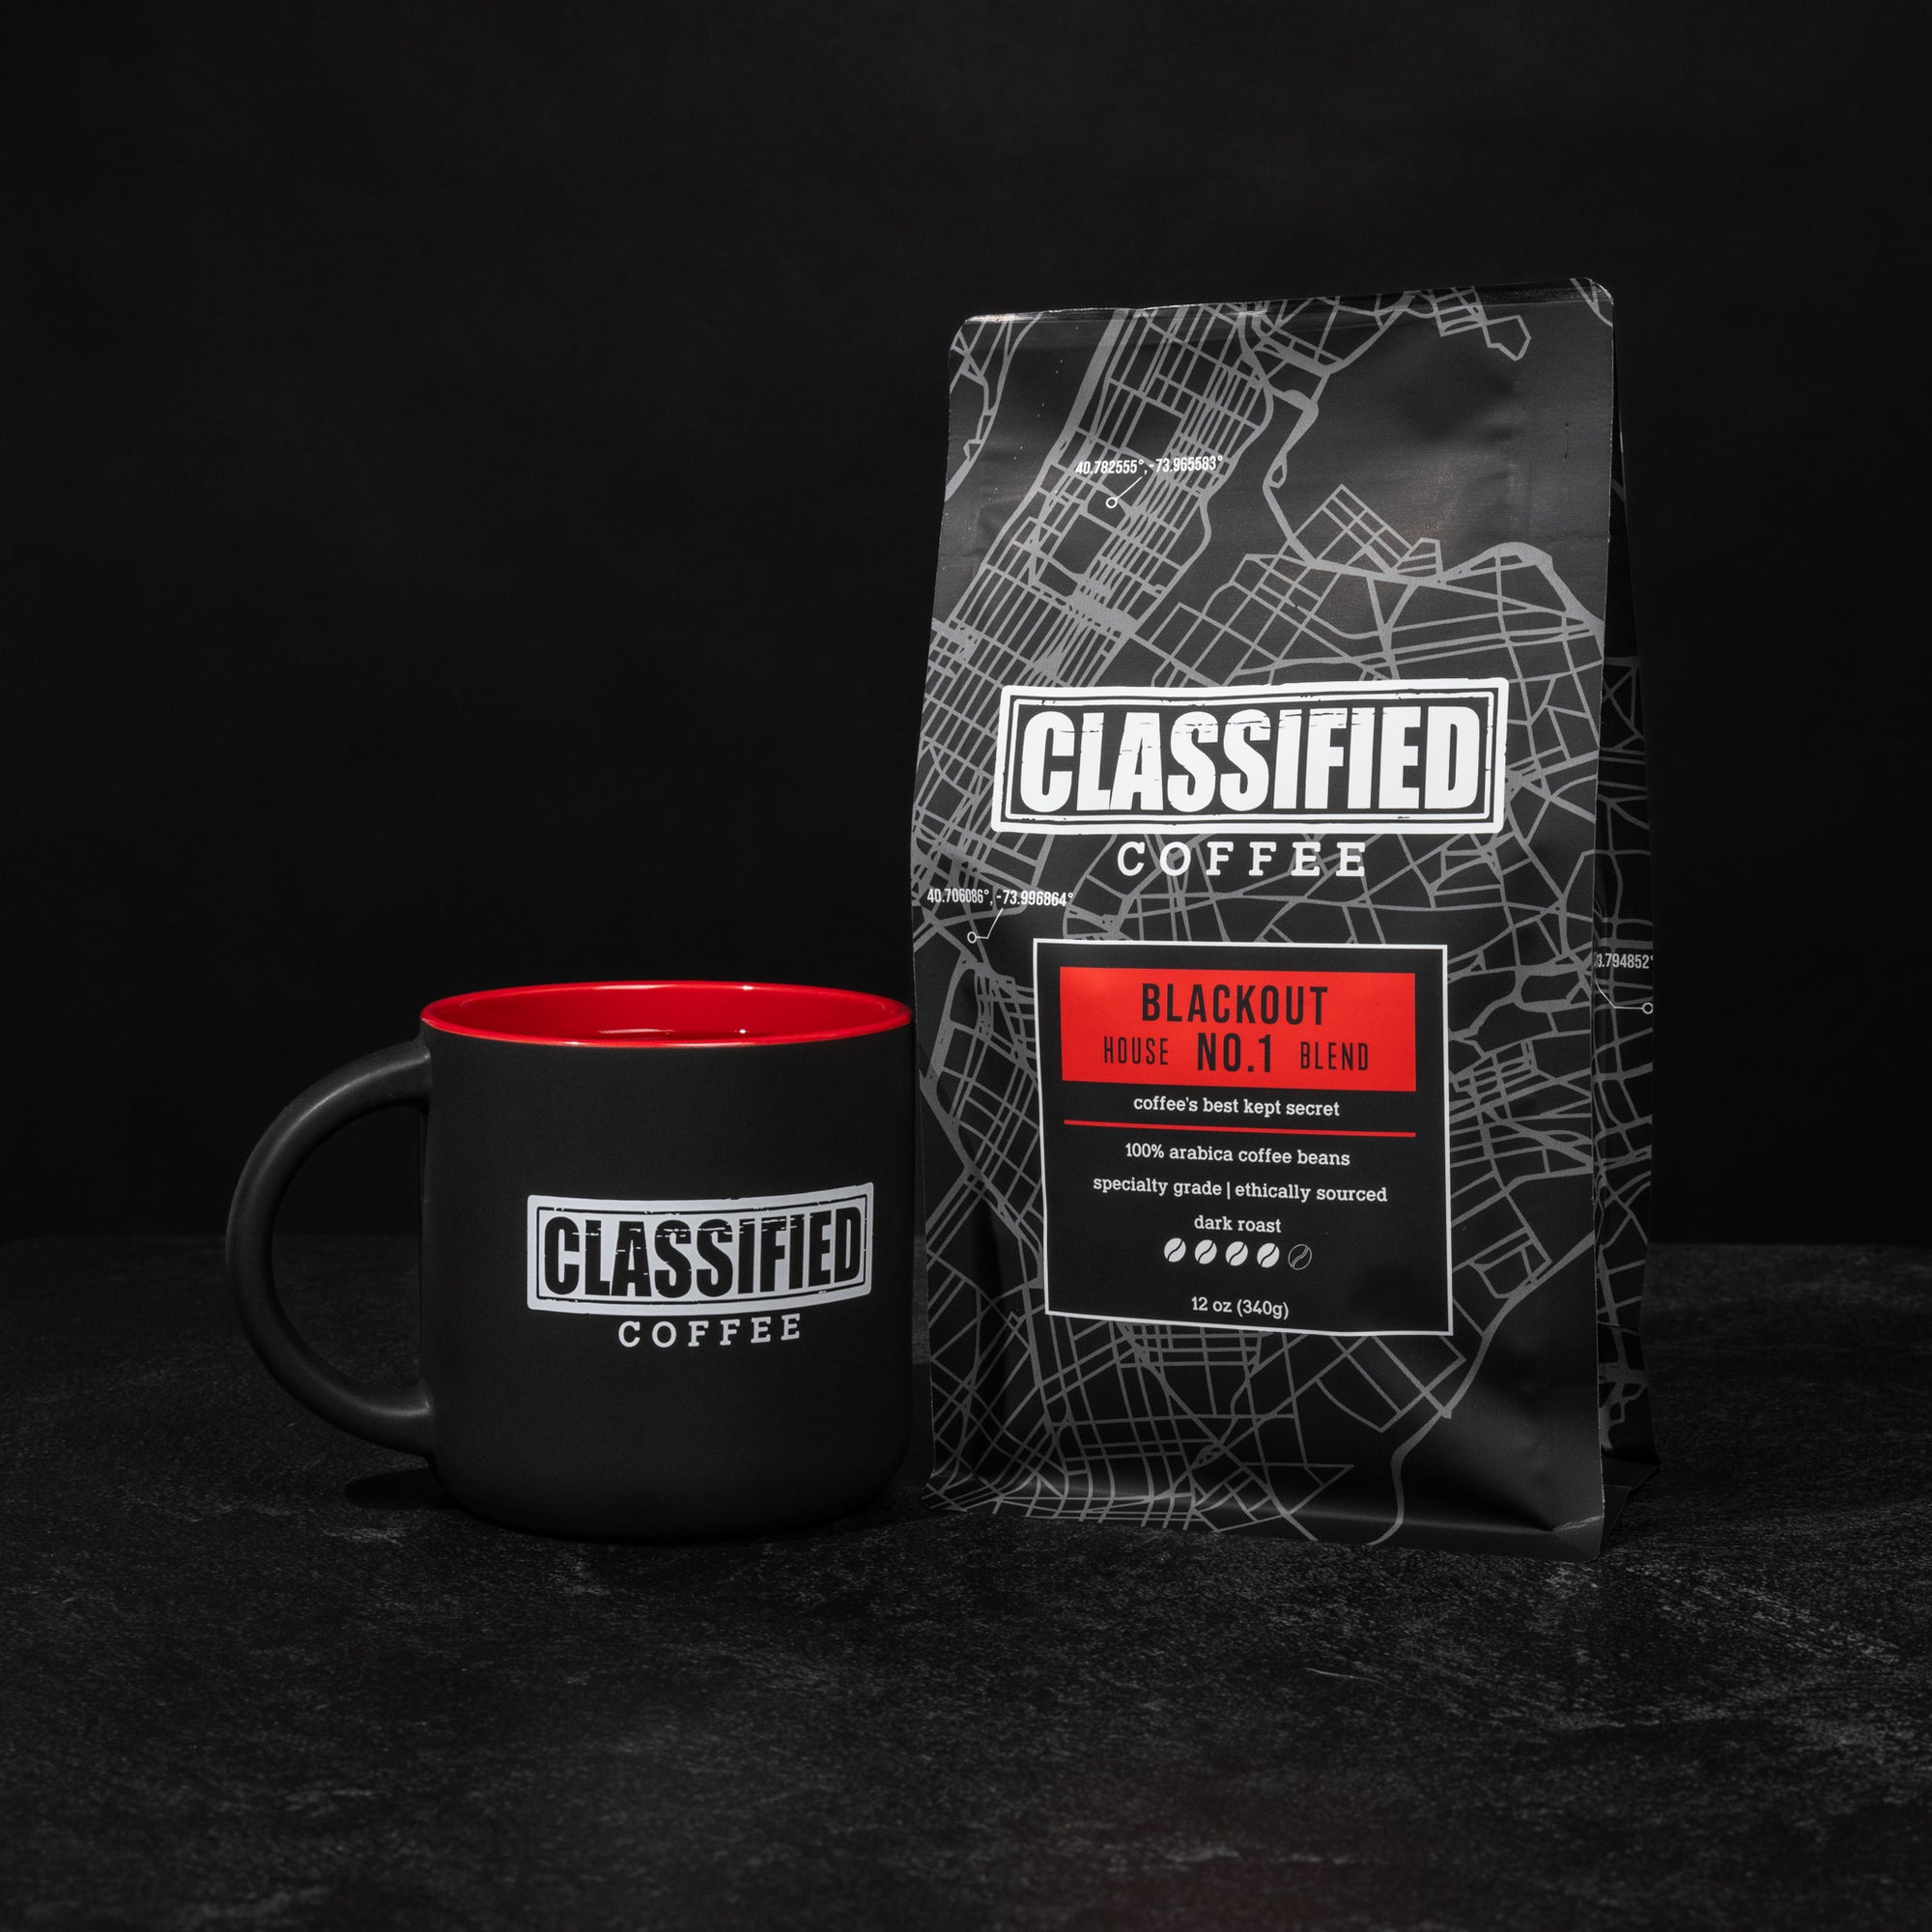 Classified Coffee Mug with coffee bag